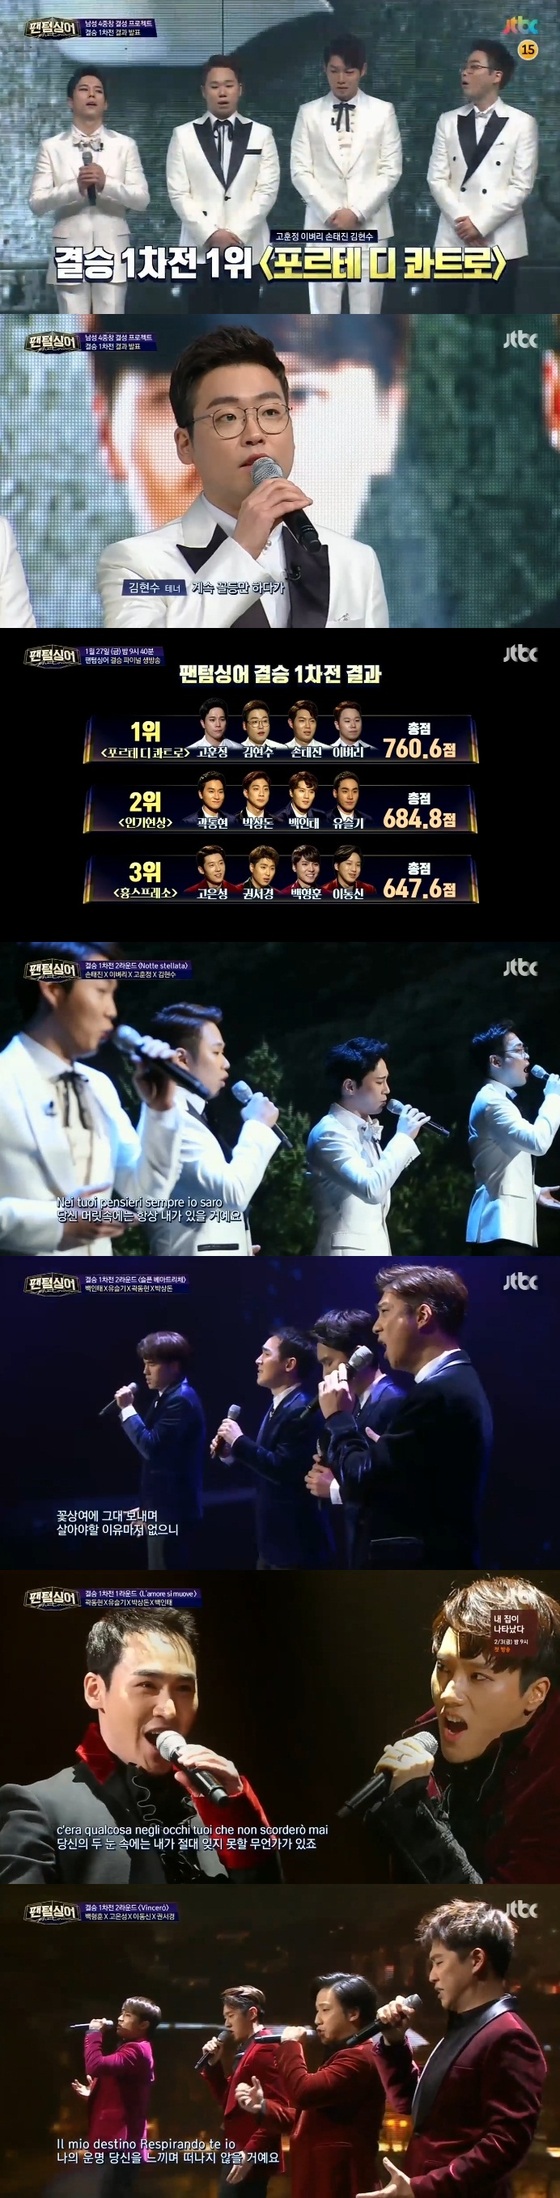 '팬텀싱어' 결승 1차전에서 6개 무대가 펼쳐졌다. © News1star / JTBC '팬텀싱어' 캡처